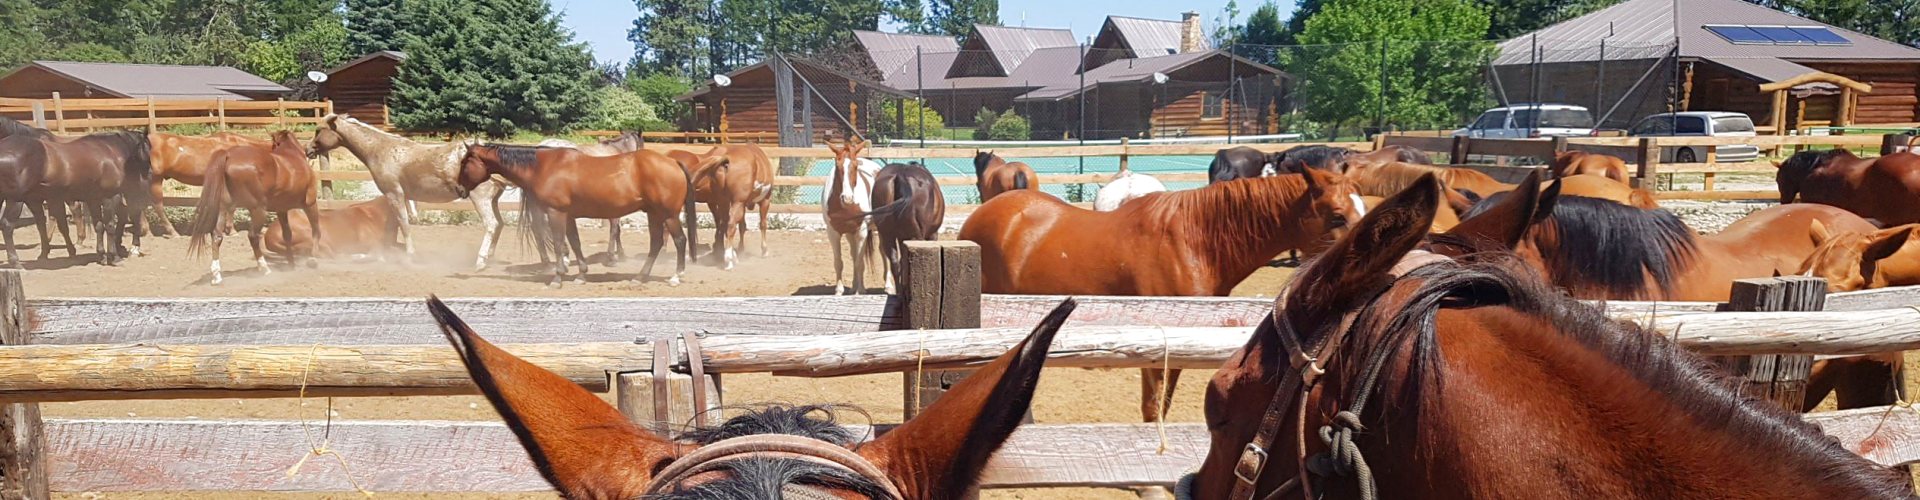 Wunderbare Pferderanch für Familien - Three Bars Ranch -  Ein schöner Platz auf Erden